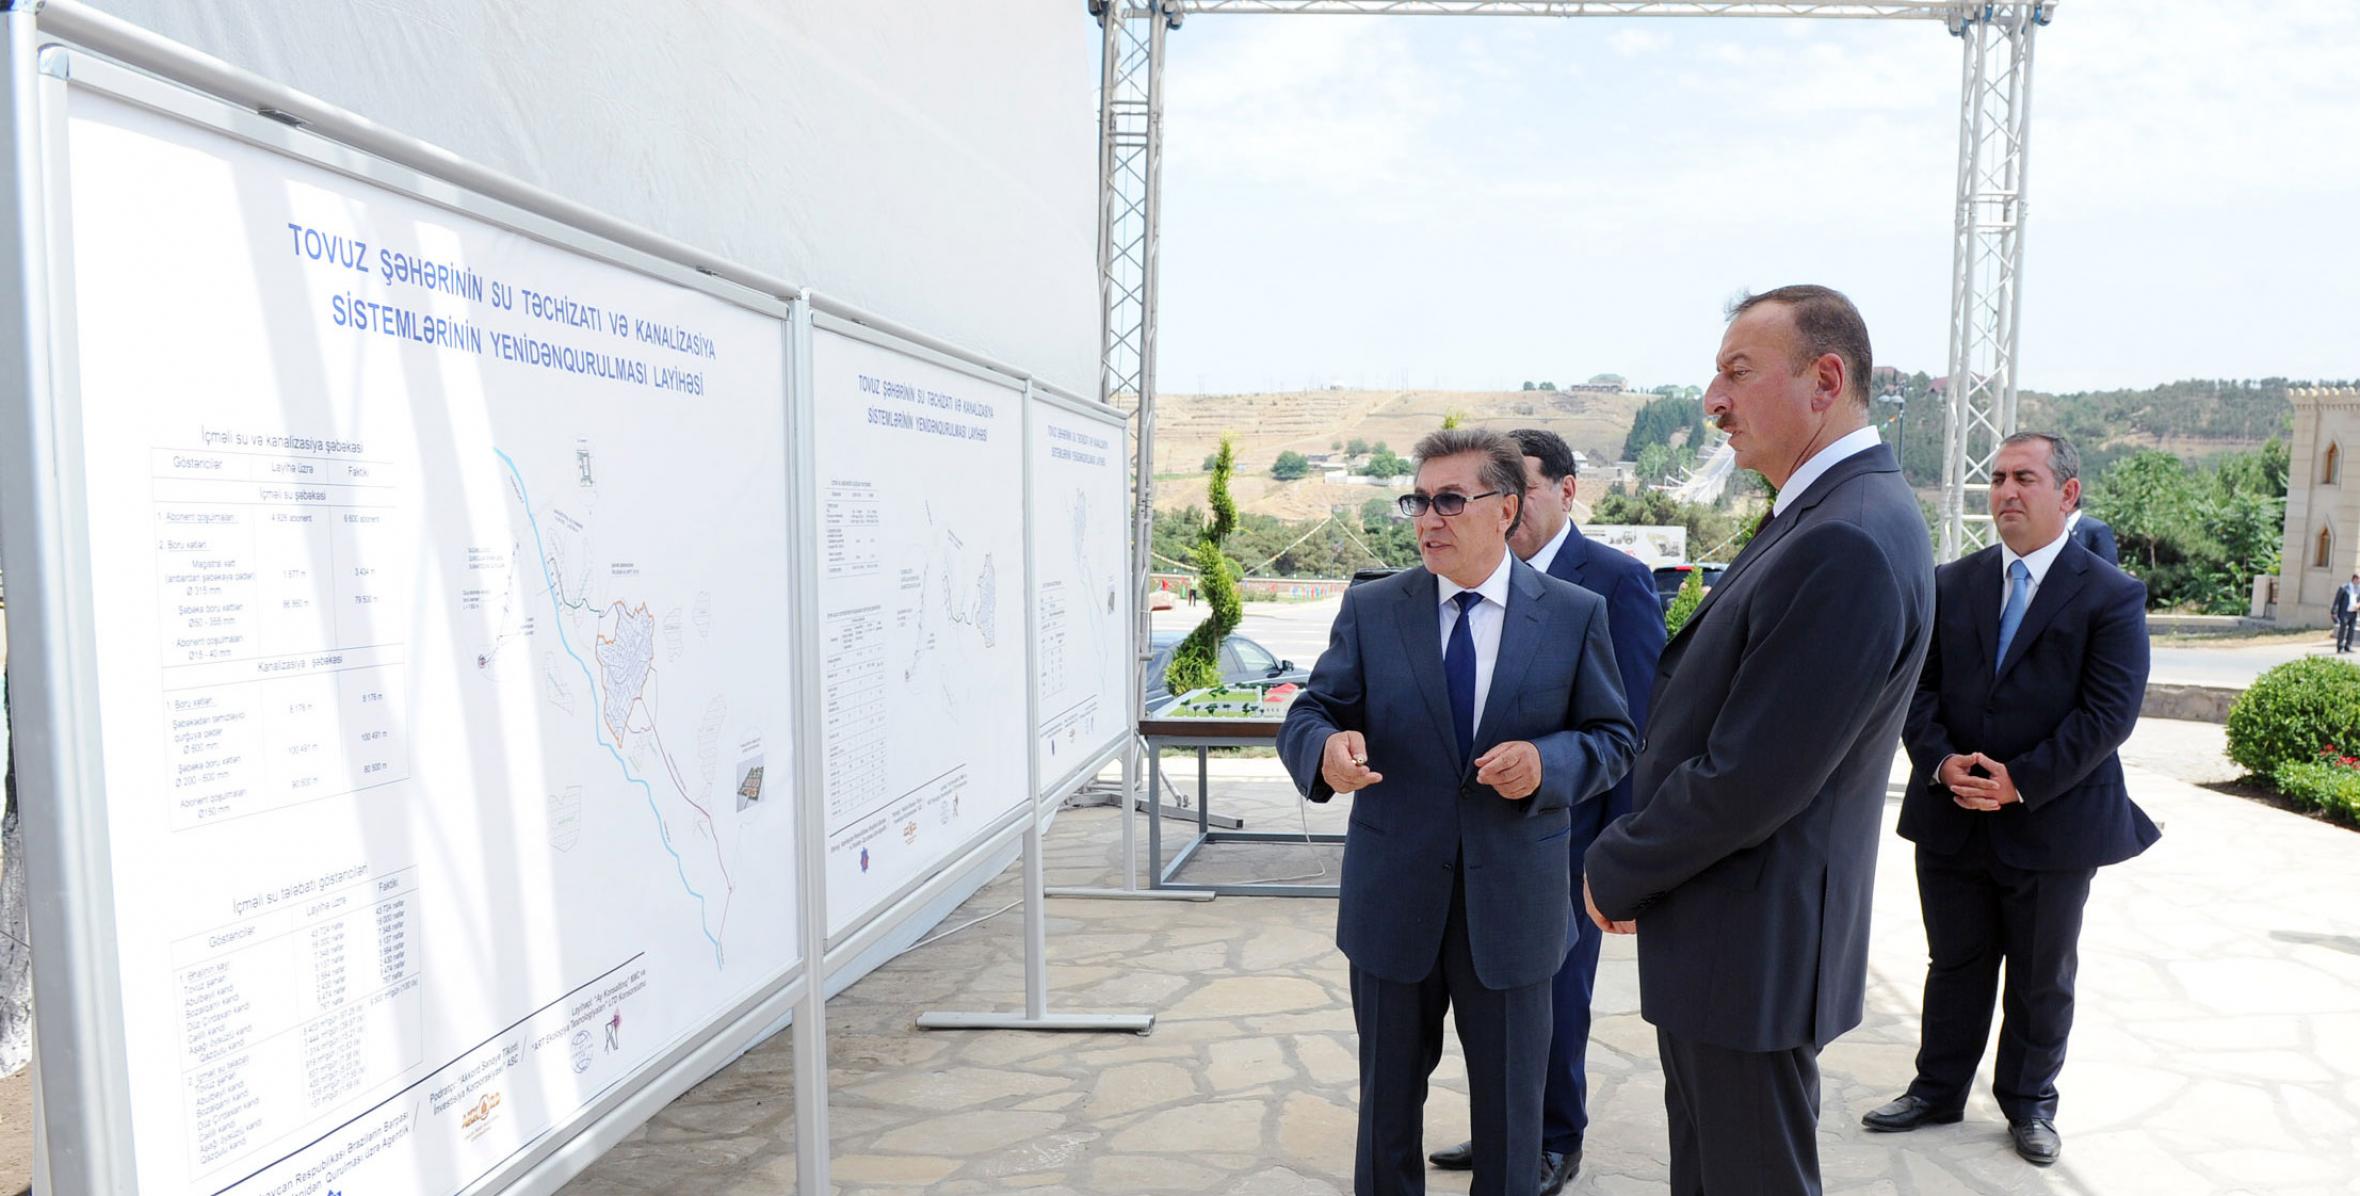 Ильхам Алиев принял участие в церемонии сдачи в эксплуатацию после реконструкции систем водоснабжения и канализации города Товуз